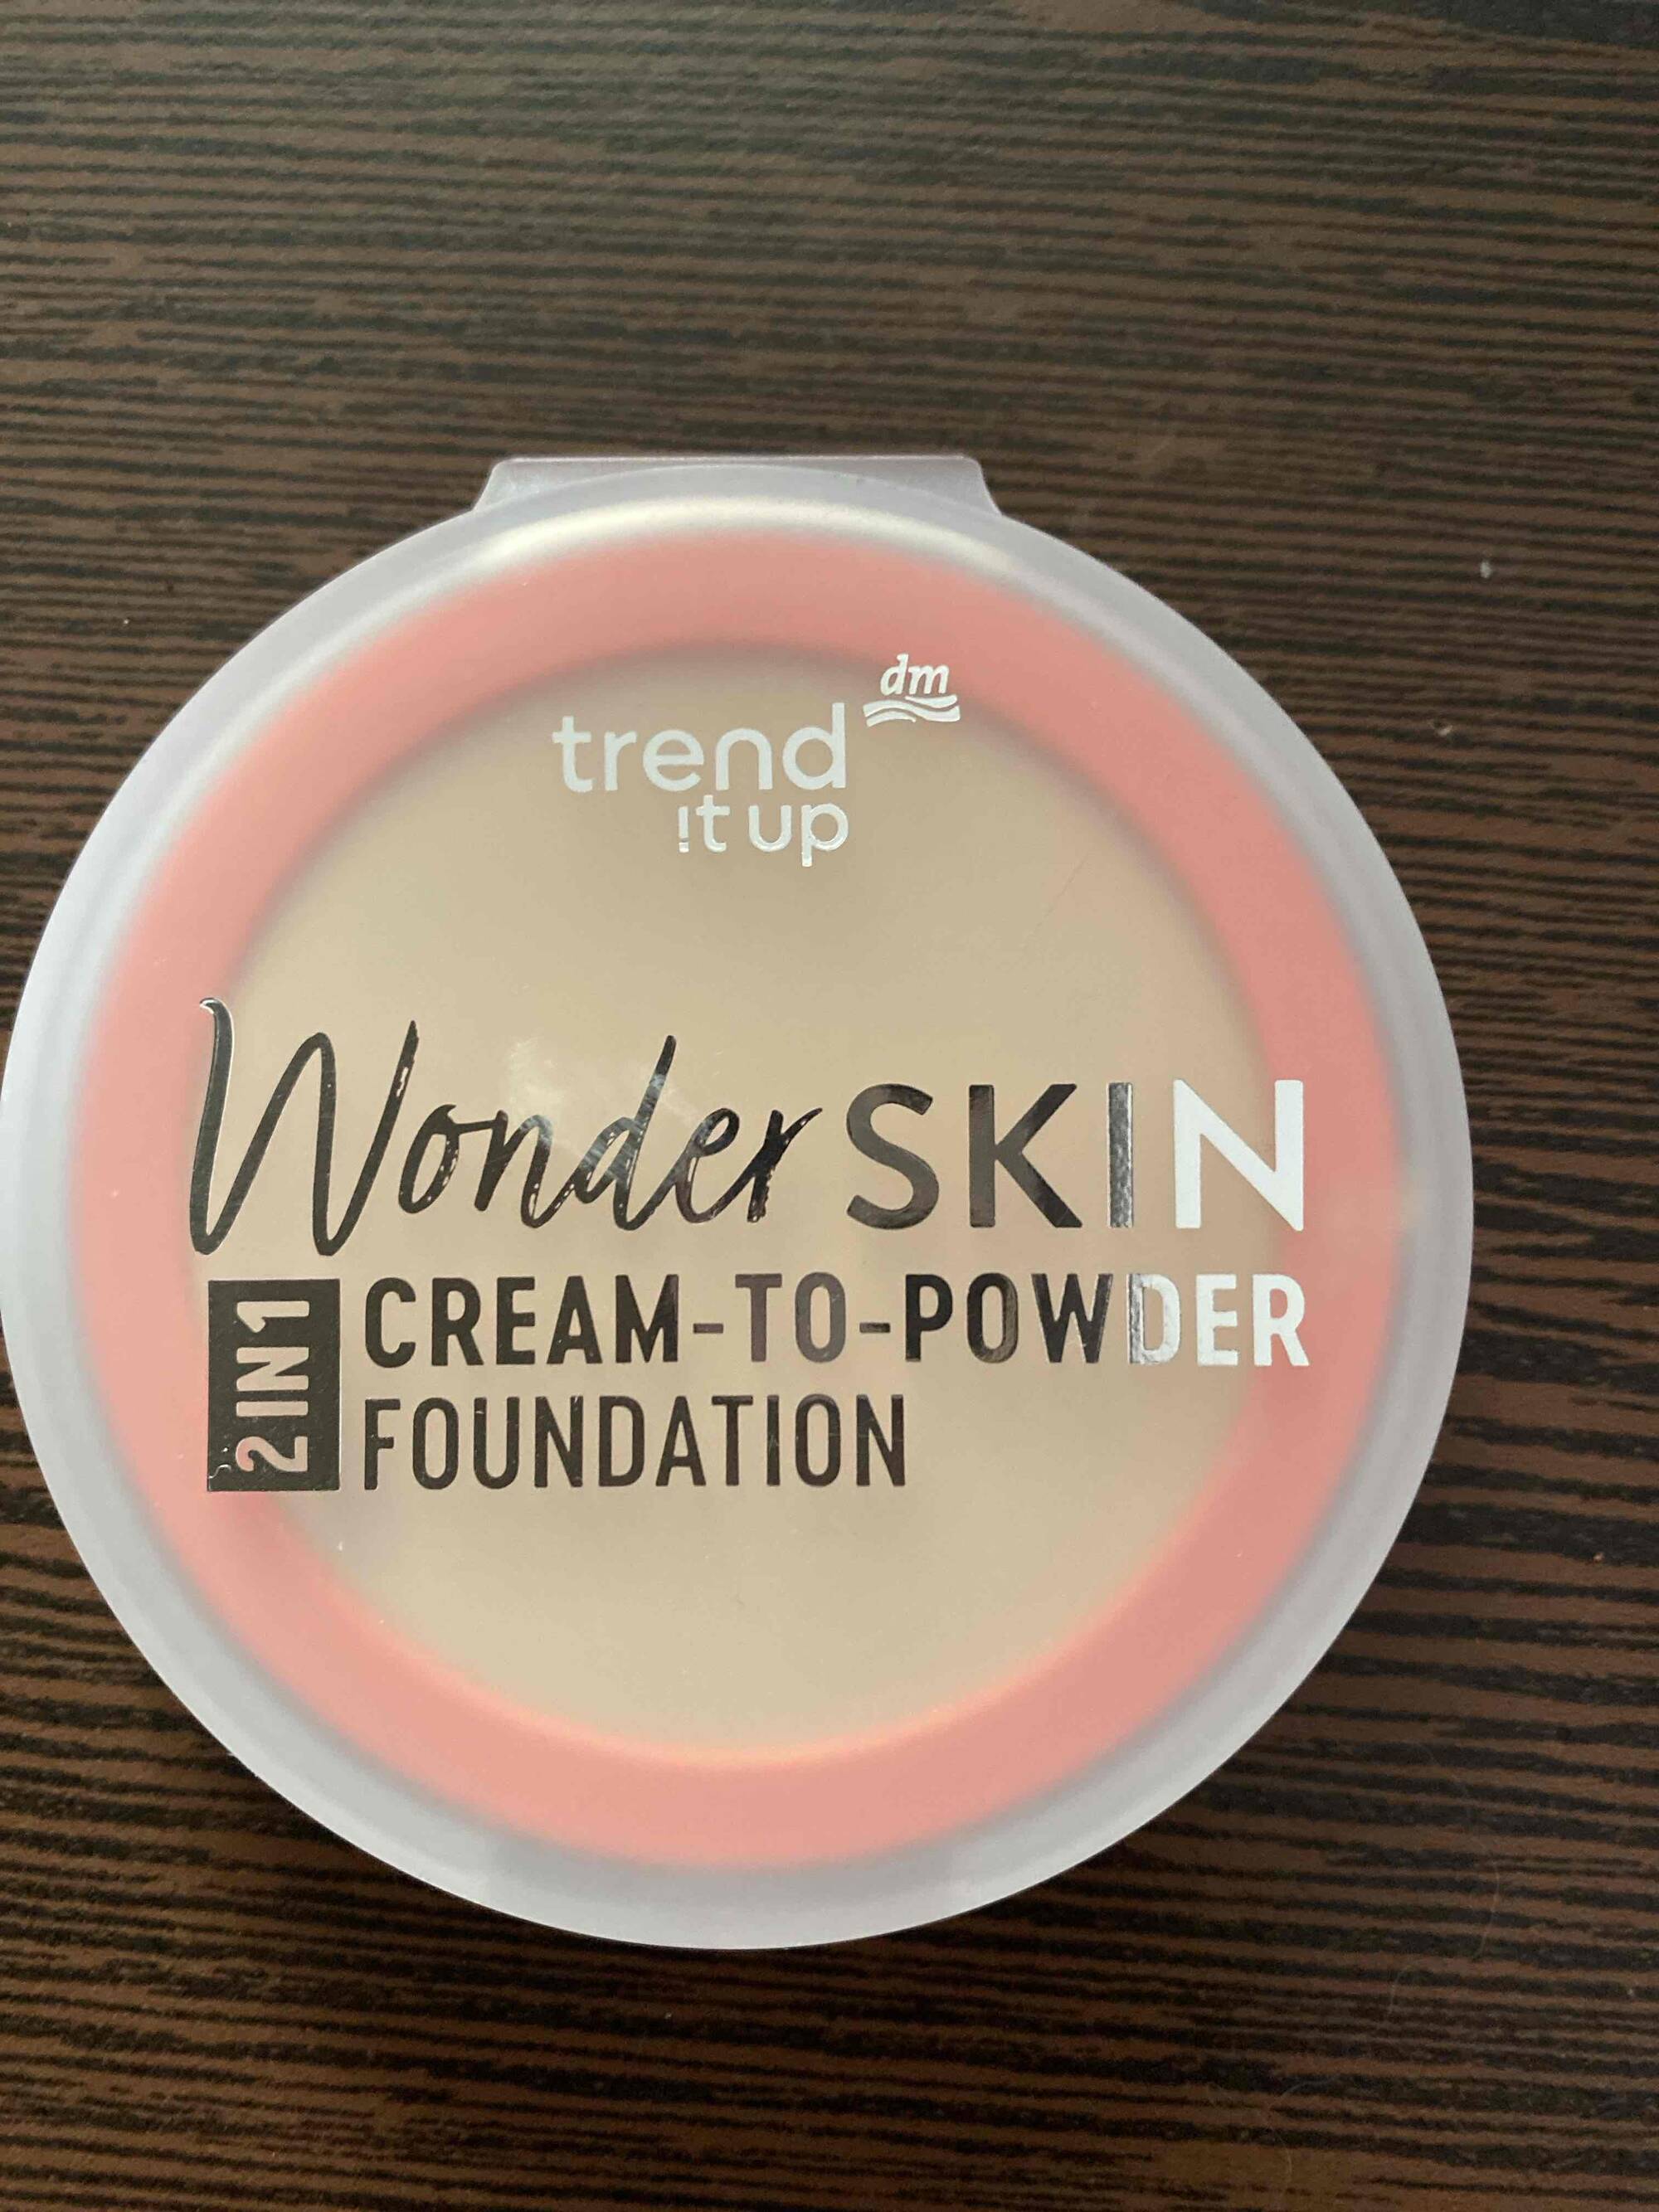 TREND IT UP - Wonder skin - Cream-to-power foundation 2 in 1